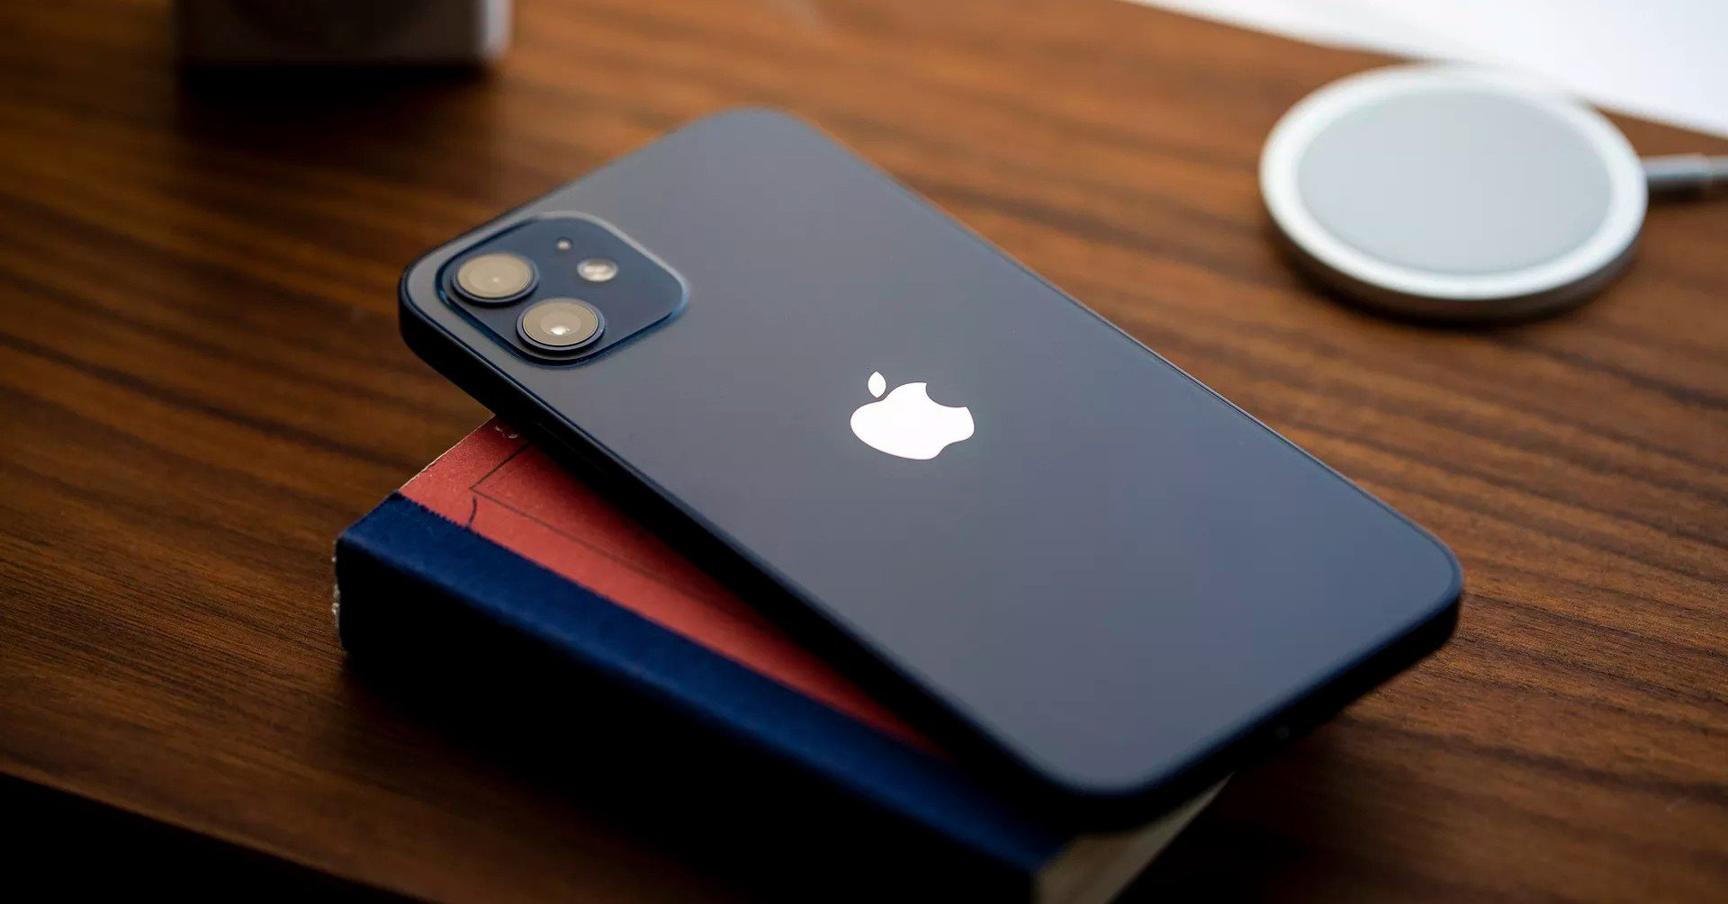 Mẫu iPhone đáng mua hiện nay trong tầm giá dưới 9 triệu đồng